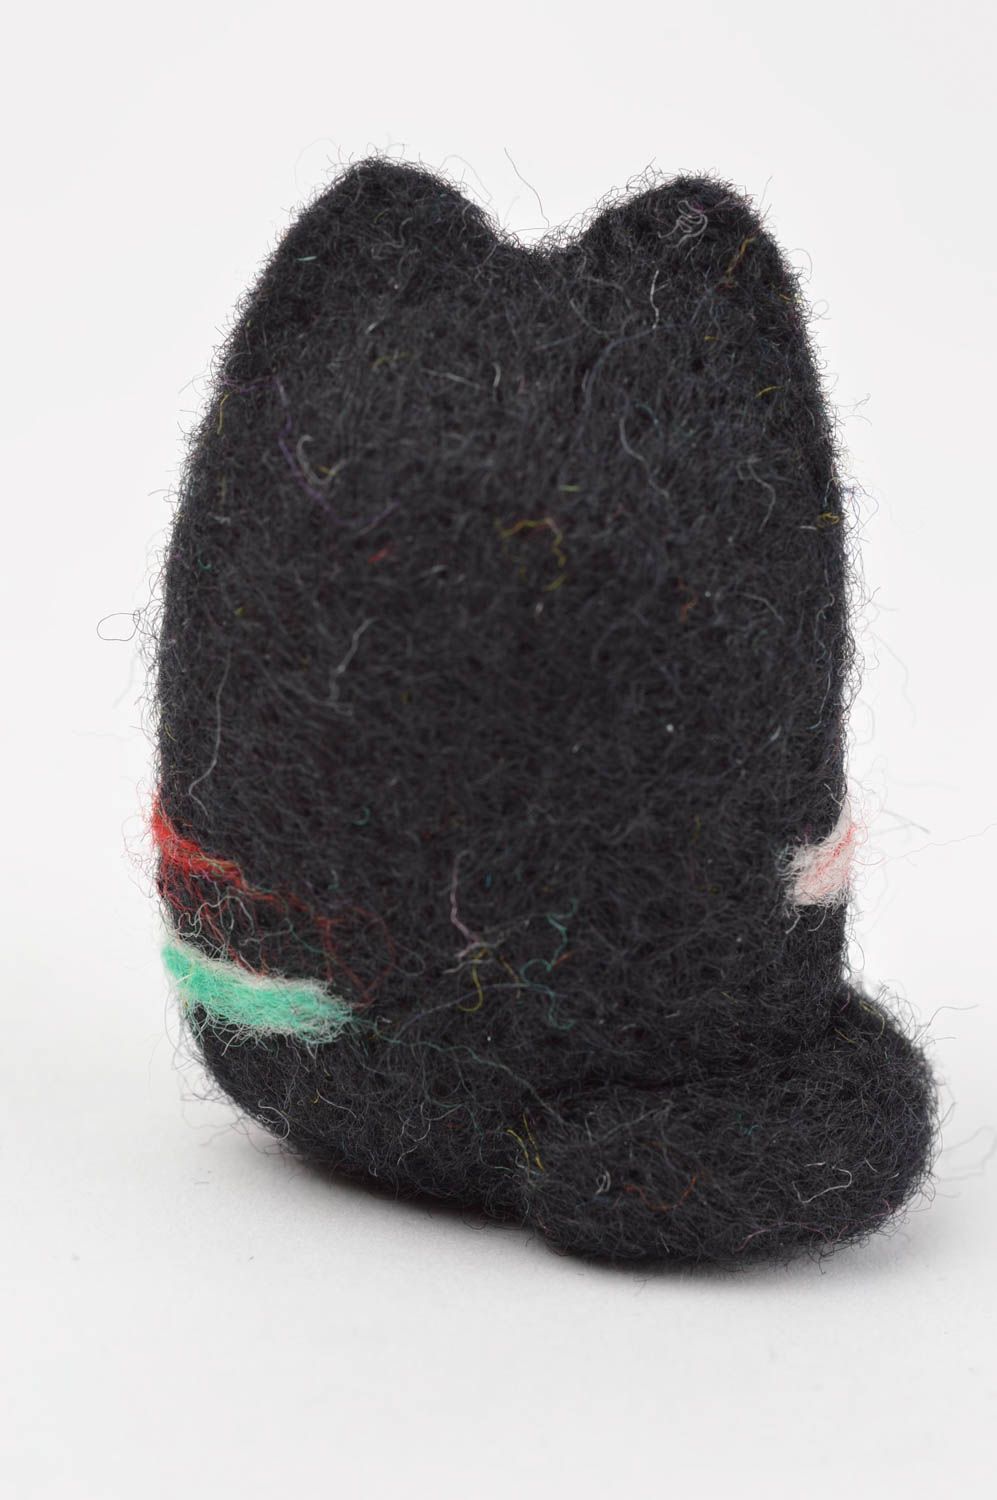 Игрушка ручной работы игрушка из валяной шерсти игрушка котик черный с полосами фото 4